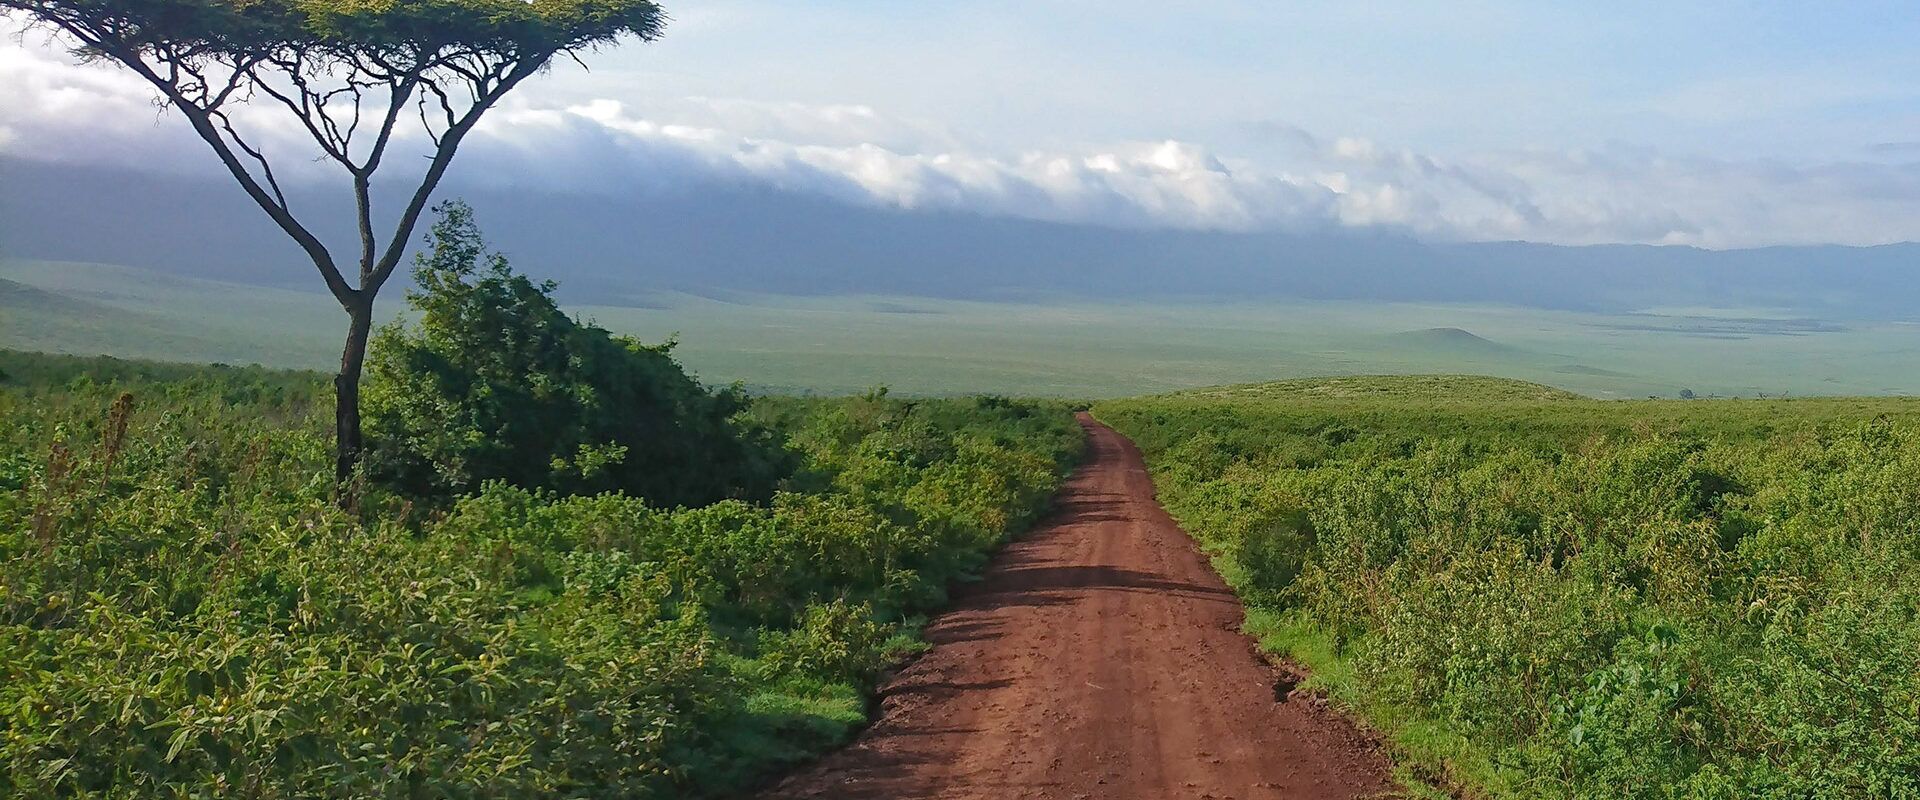 parques nacionales de Tanzania